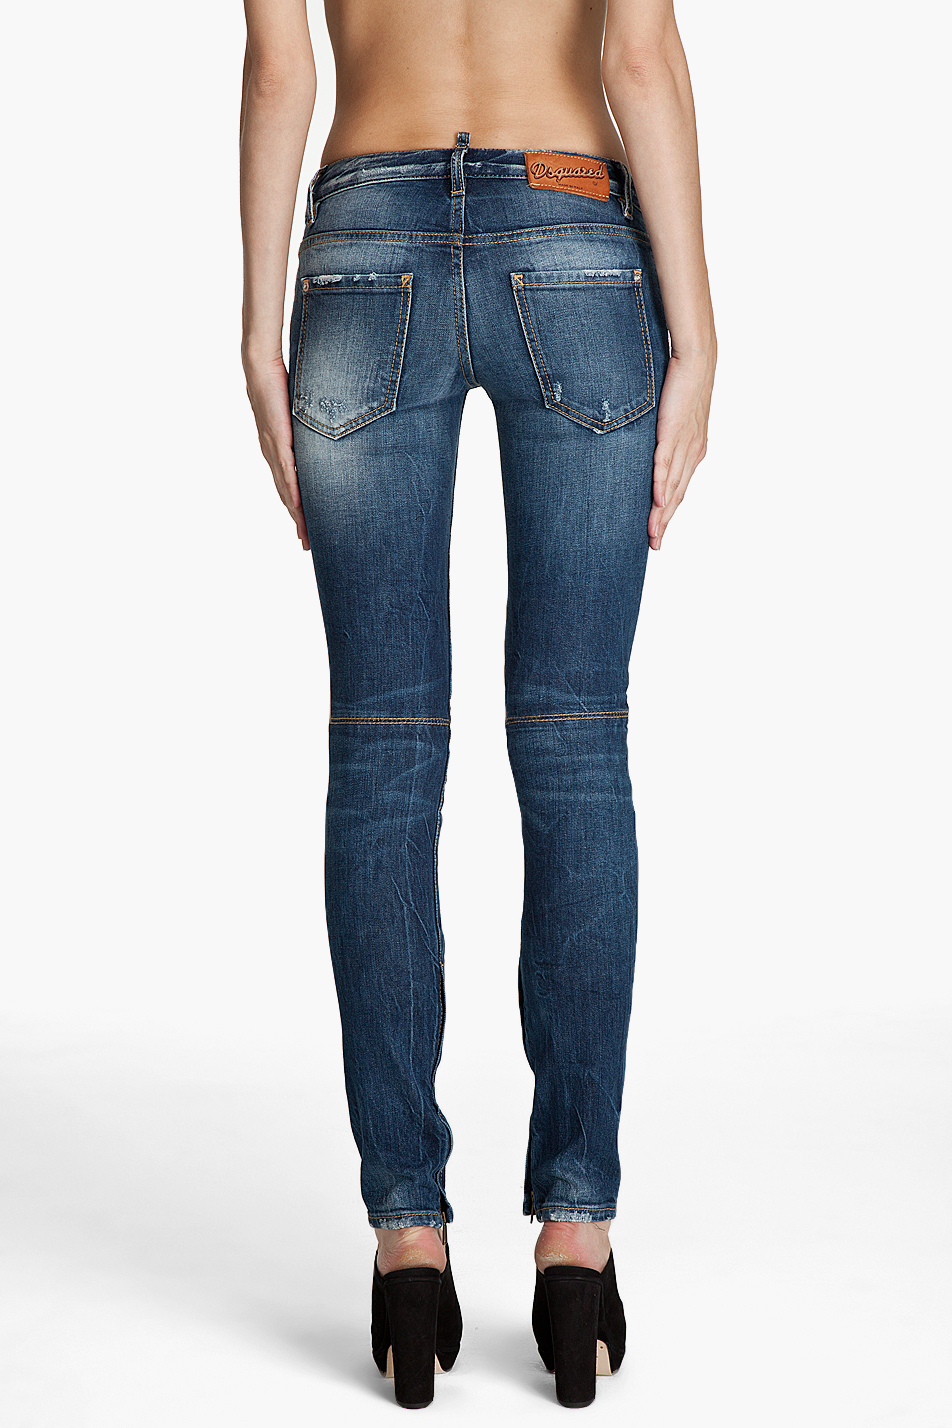 lowrise jeans voyeur gallery